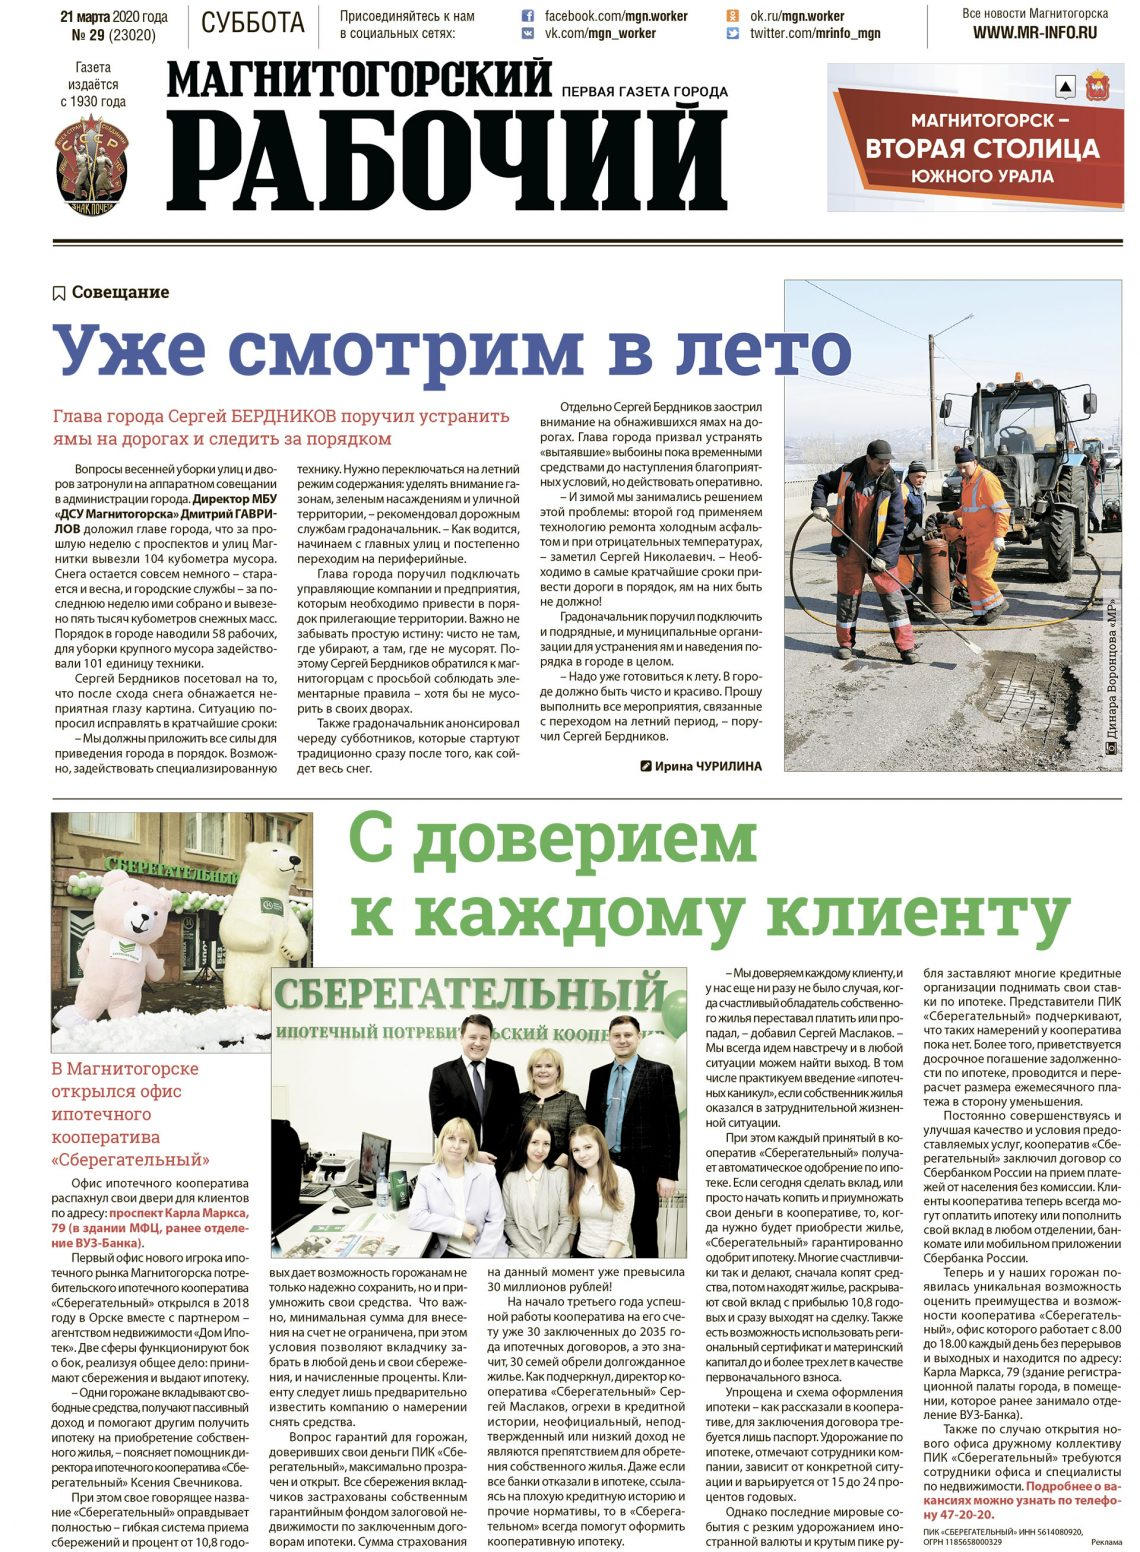 фото первая полоса газеты "Магнитогорский рабочий" за 21 марта 2020 года